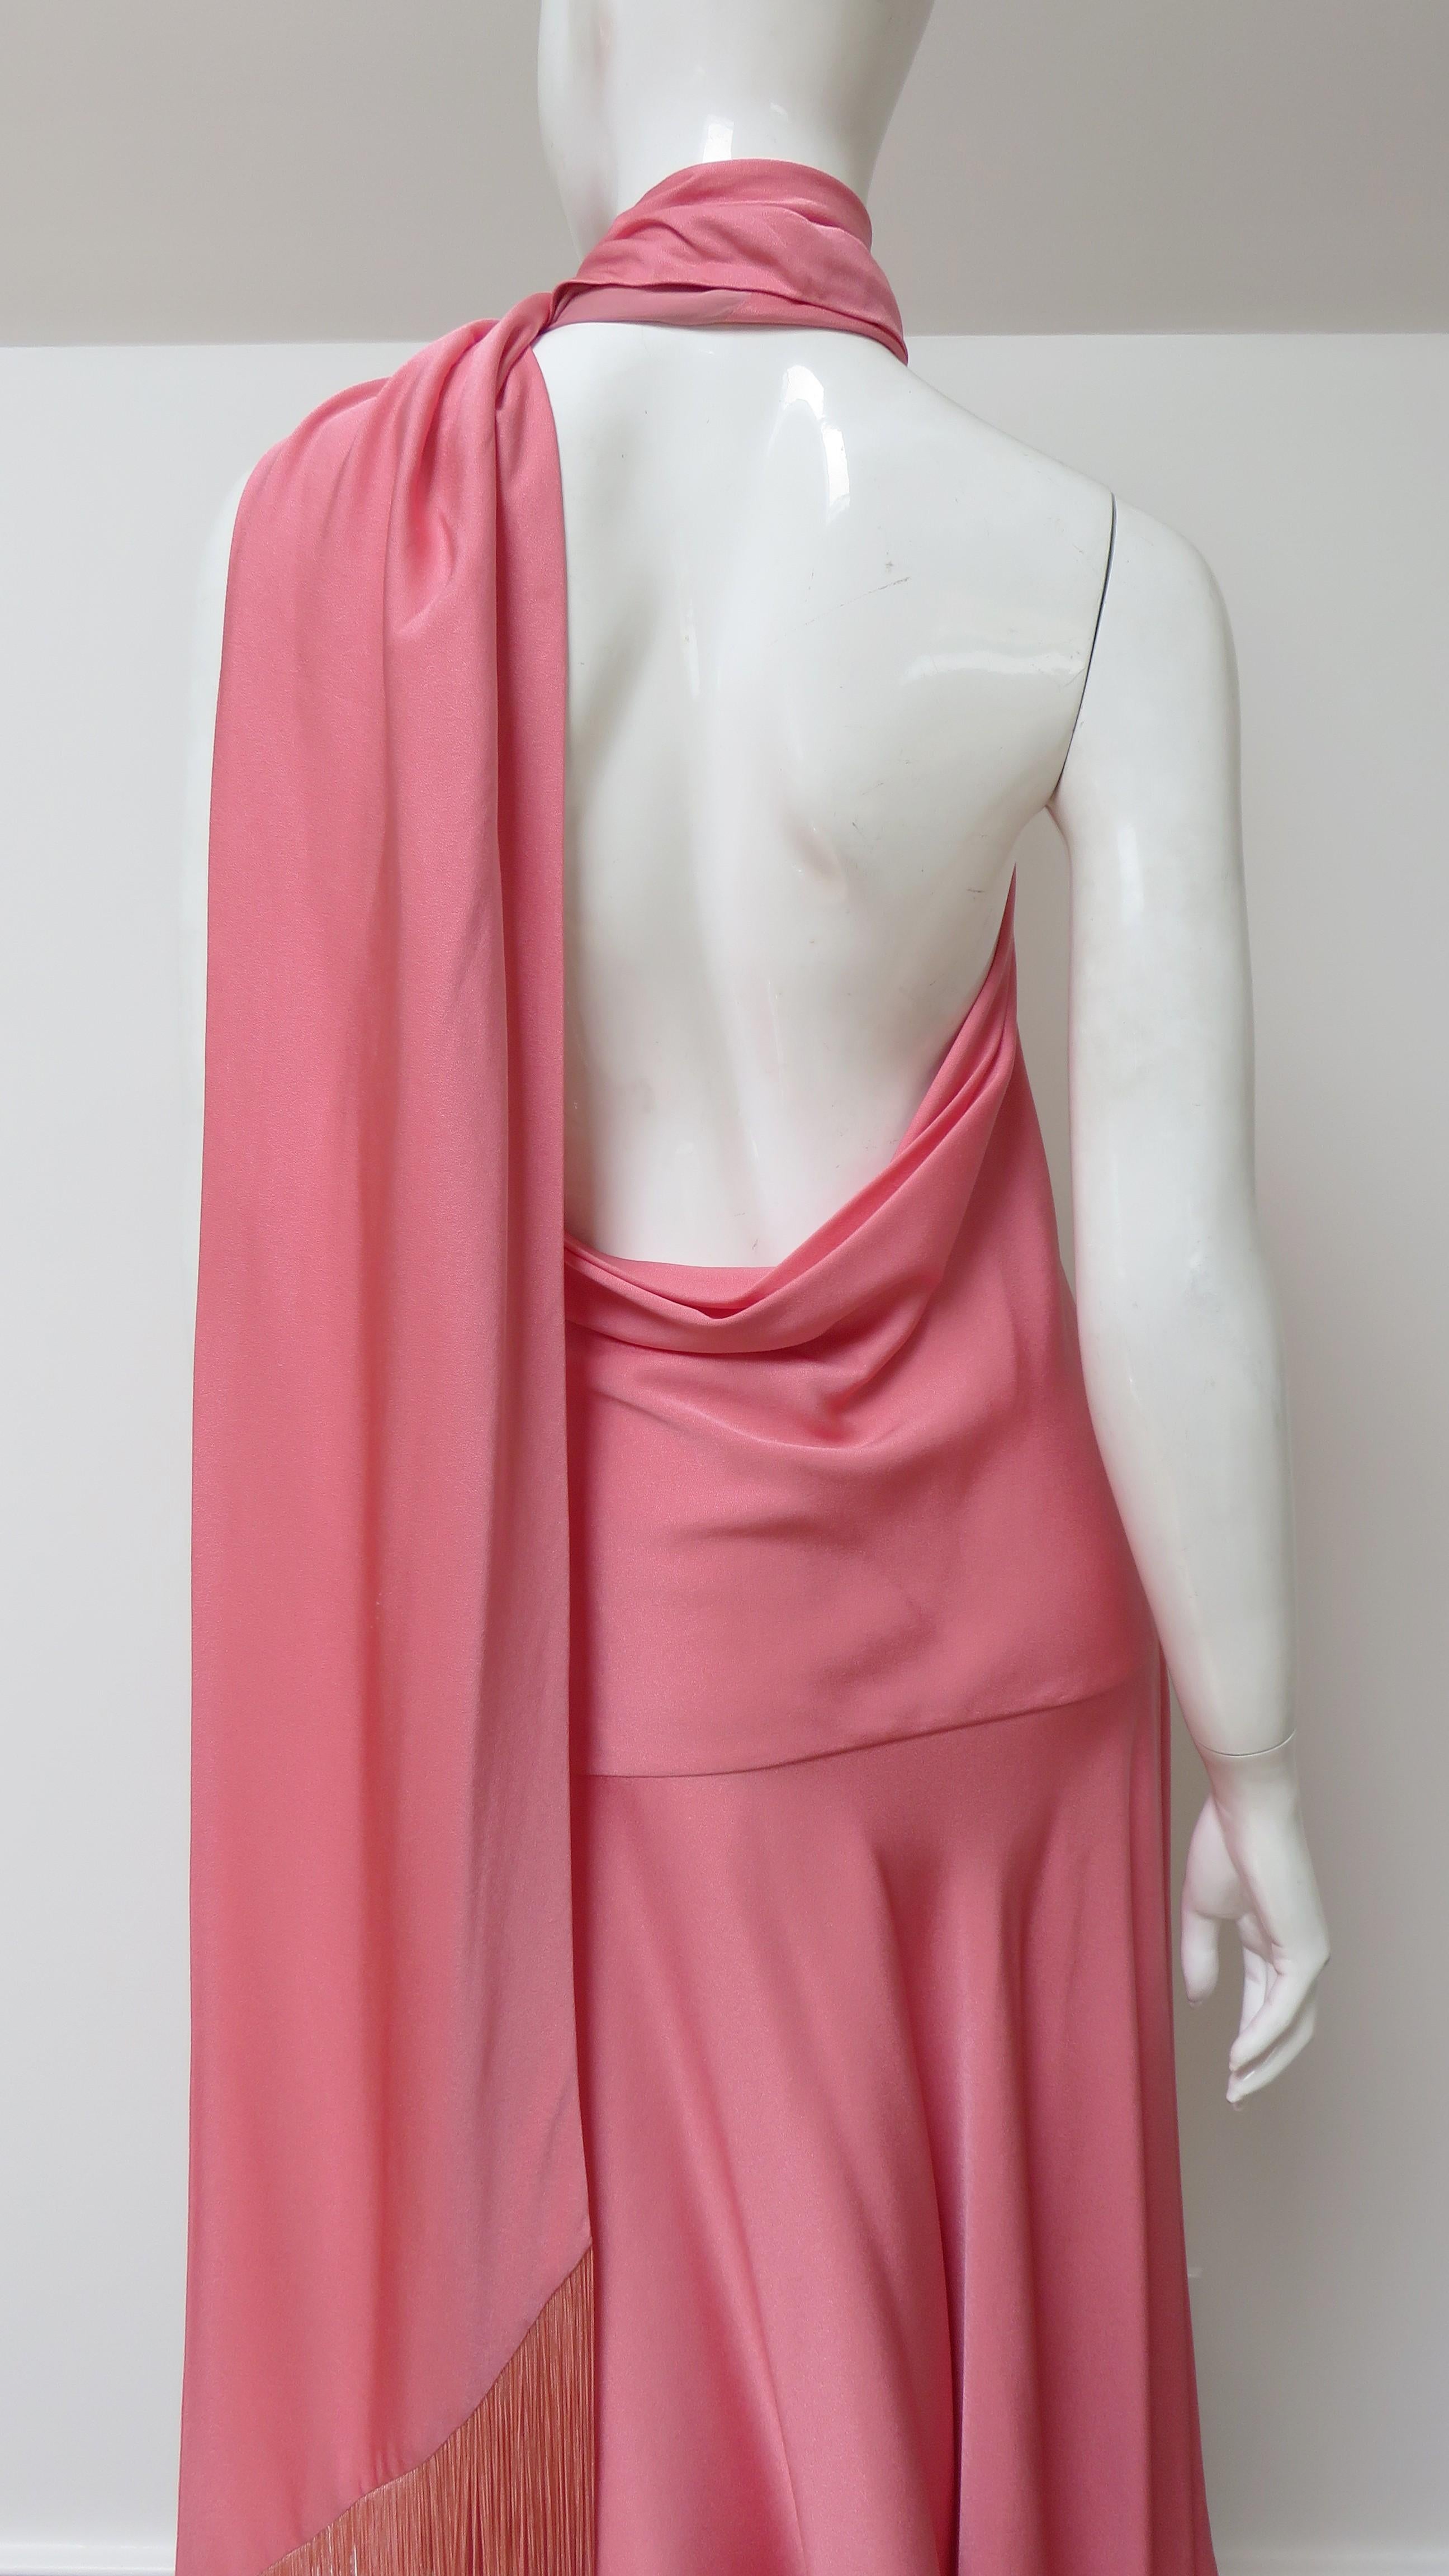 Alexander McQueen S/S 2008 Silk Halter Dress  For Sale 2